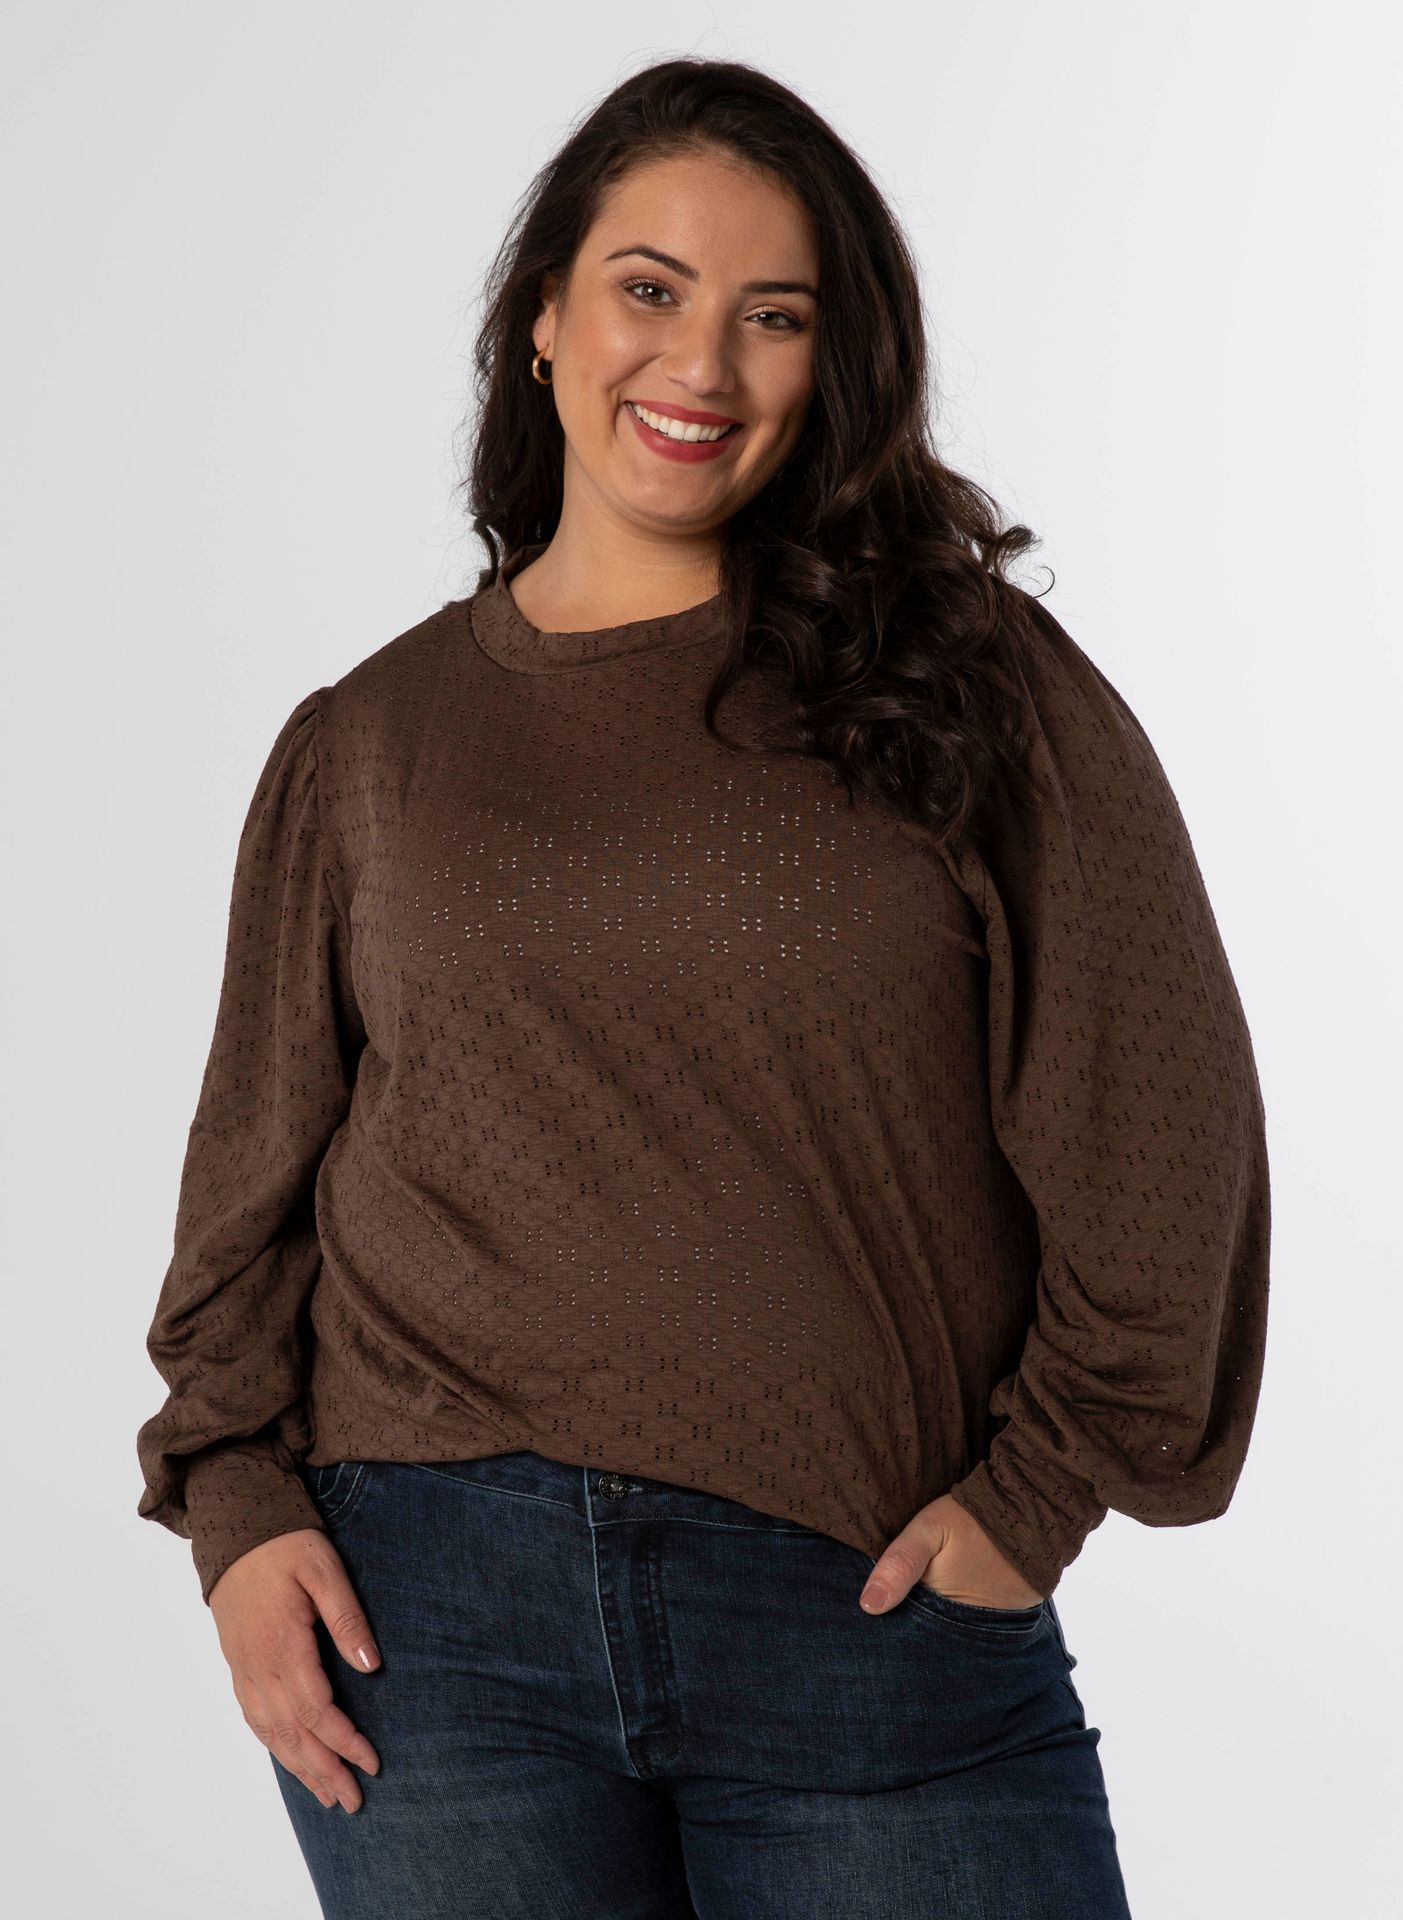 Norah Shirt bruin dark brown 212159-299